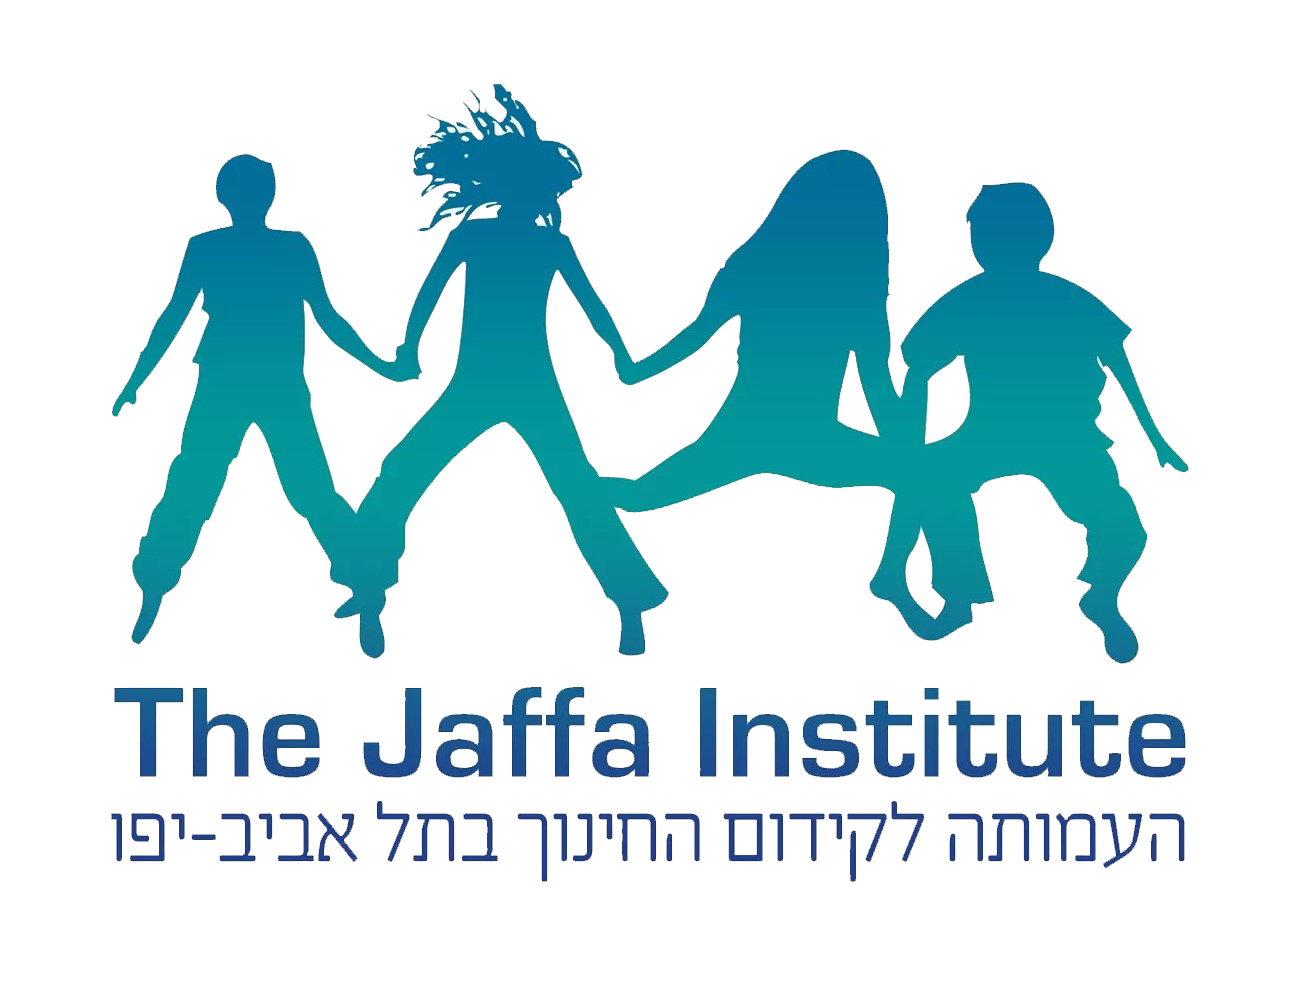 The Jaffa Institute logo